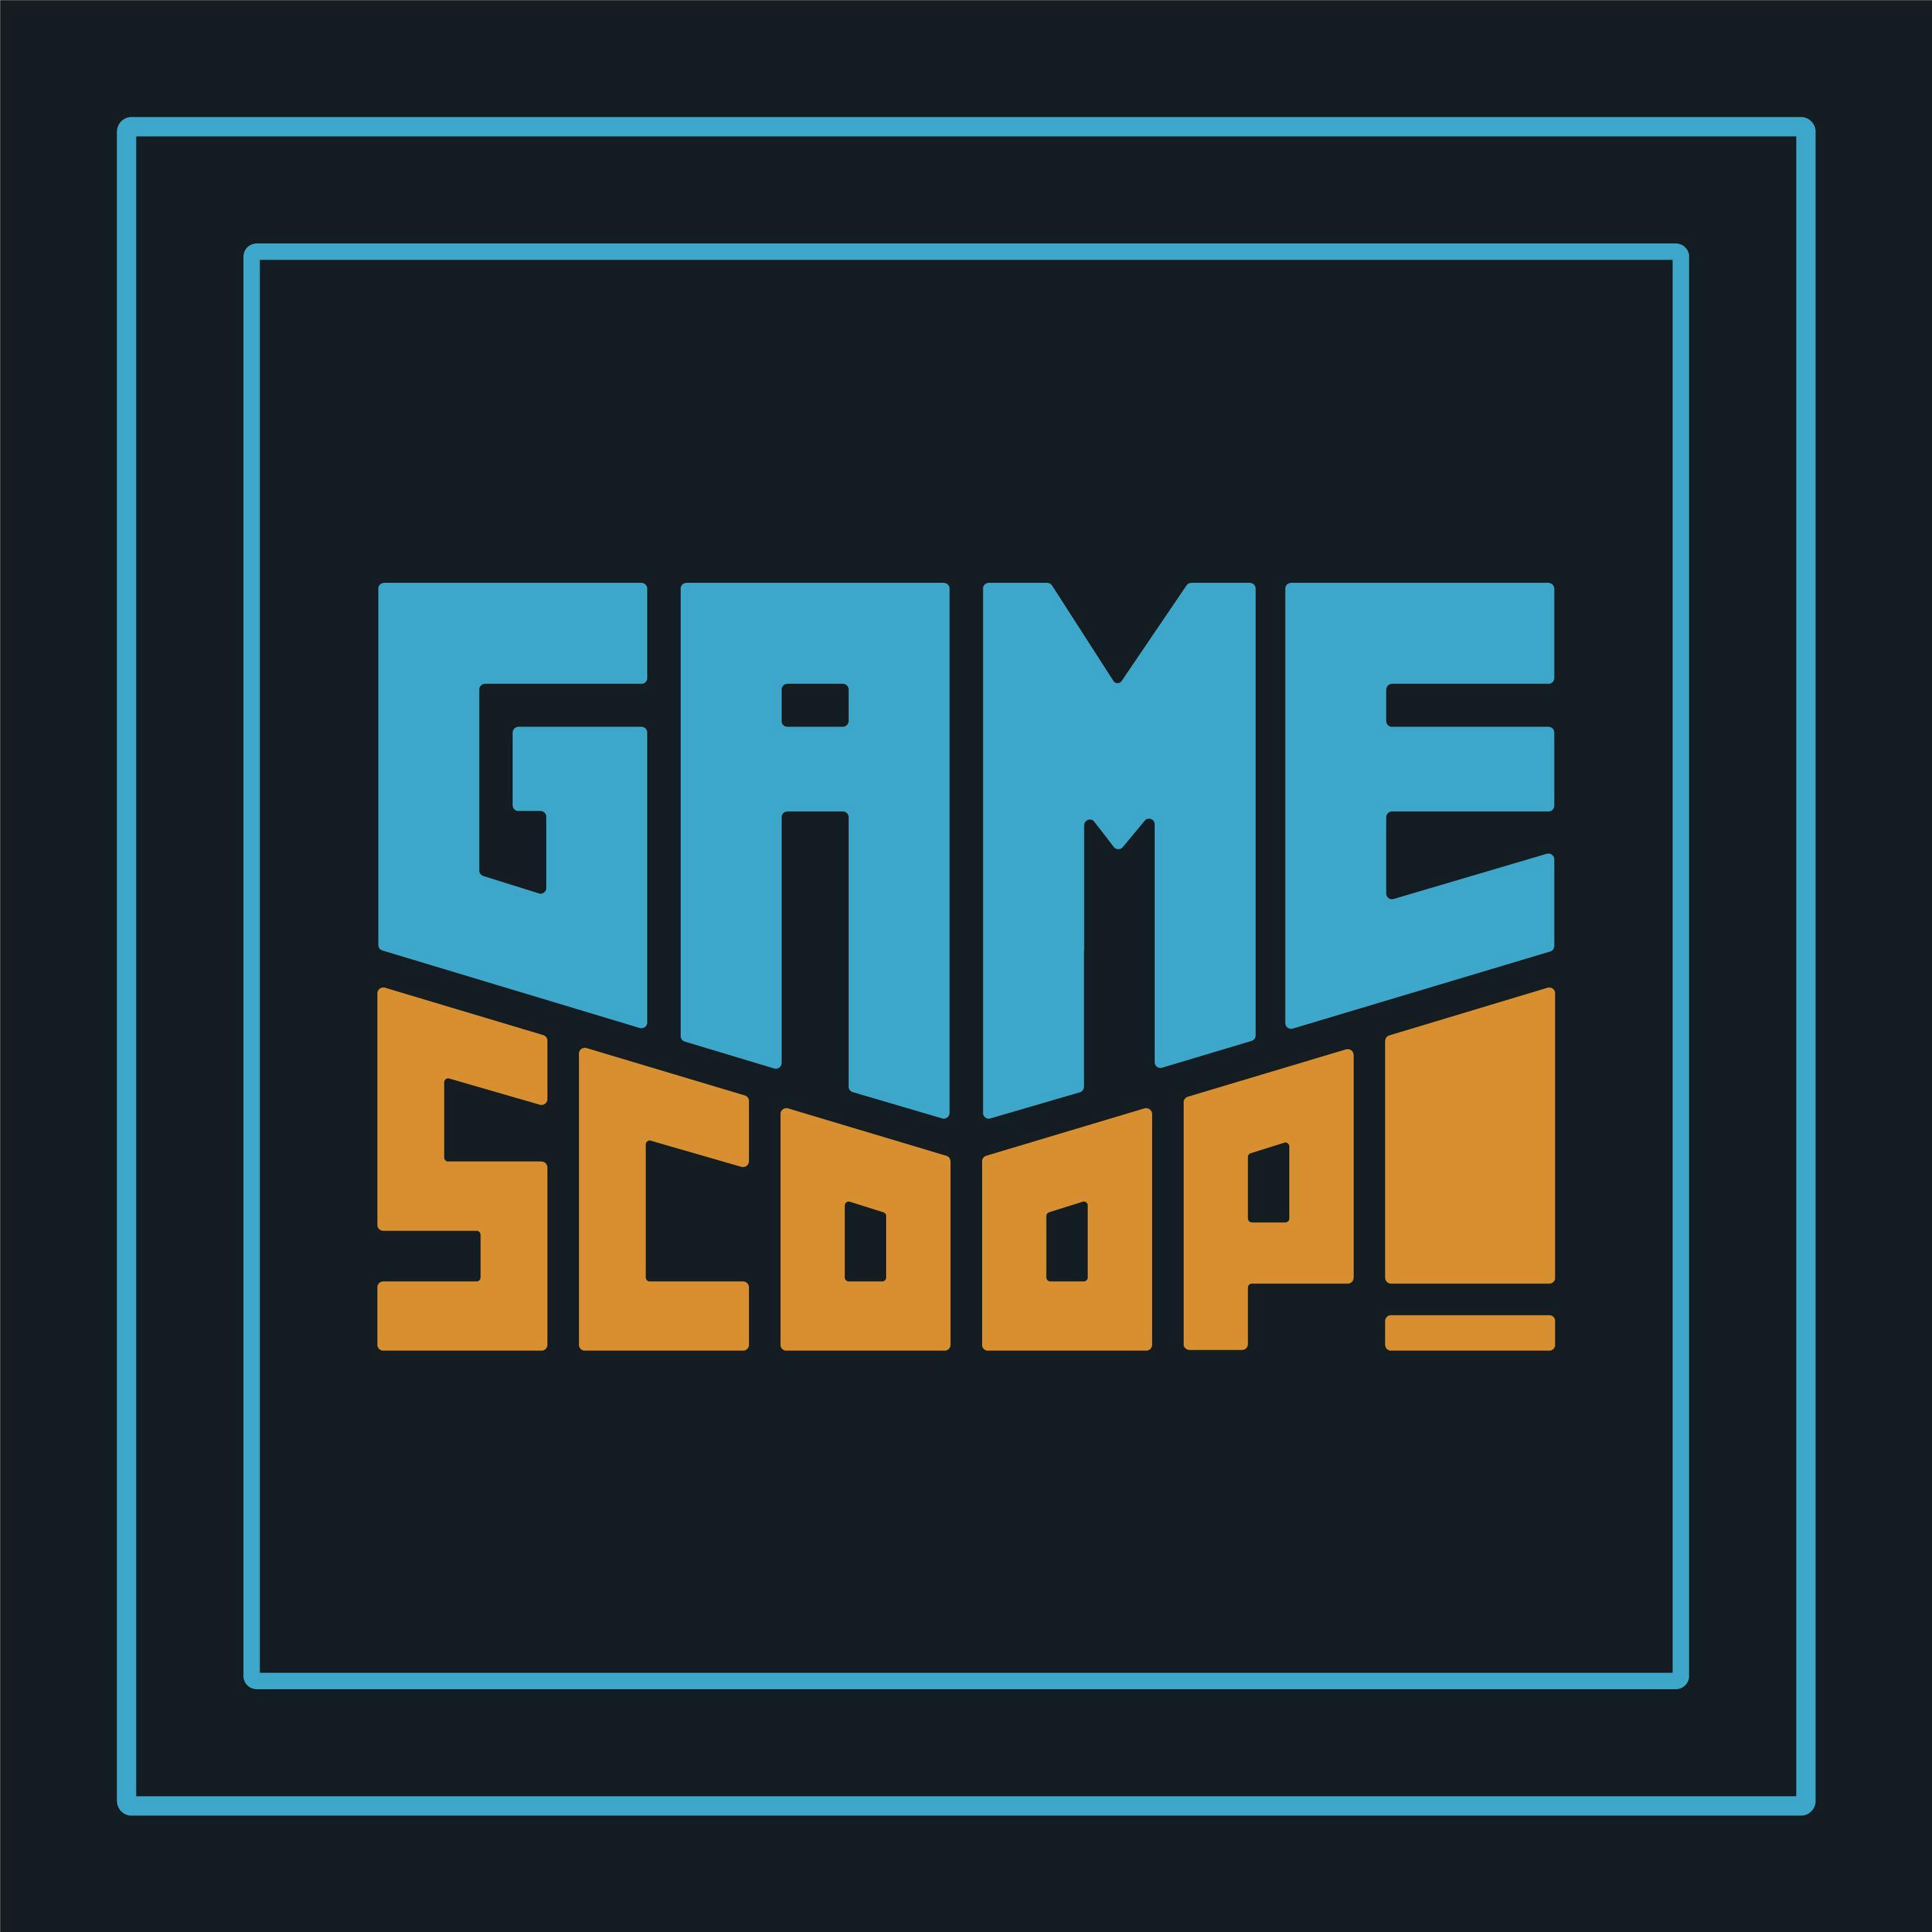 Game Scoop Episode 609